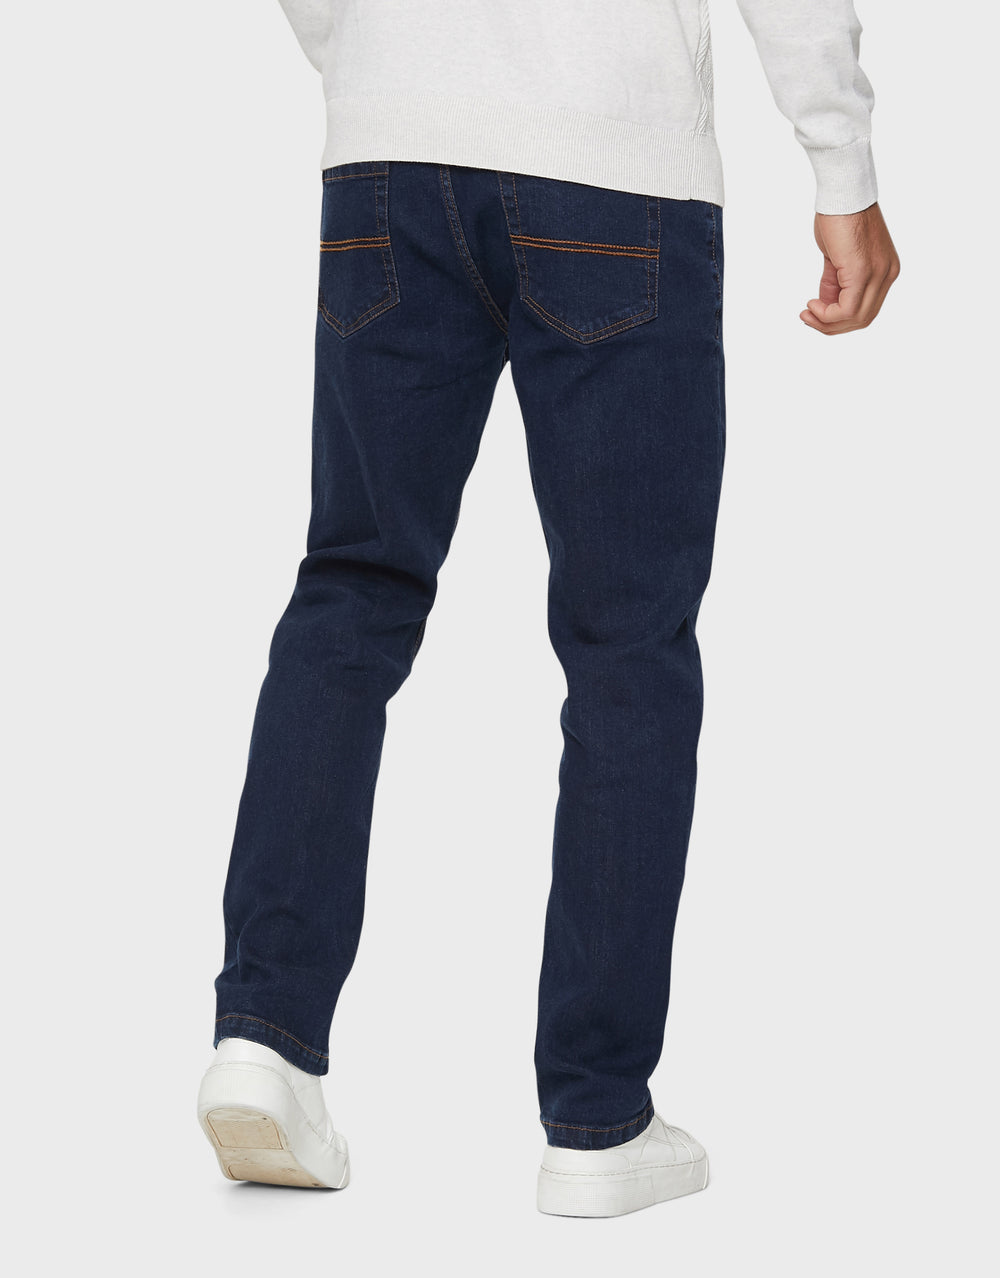 Men's Denim Jeans, Straight Leg & Skinny Jeans – Threadbare